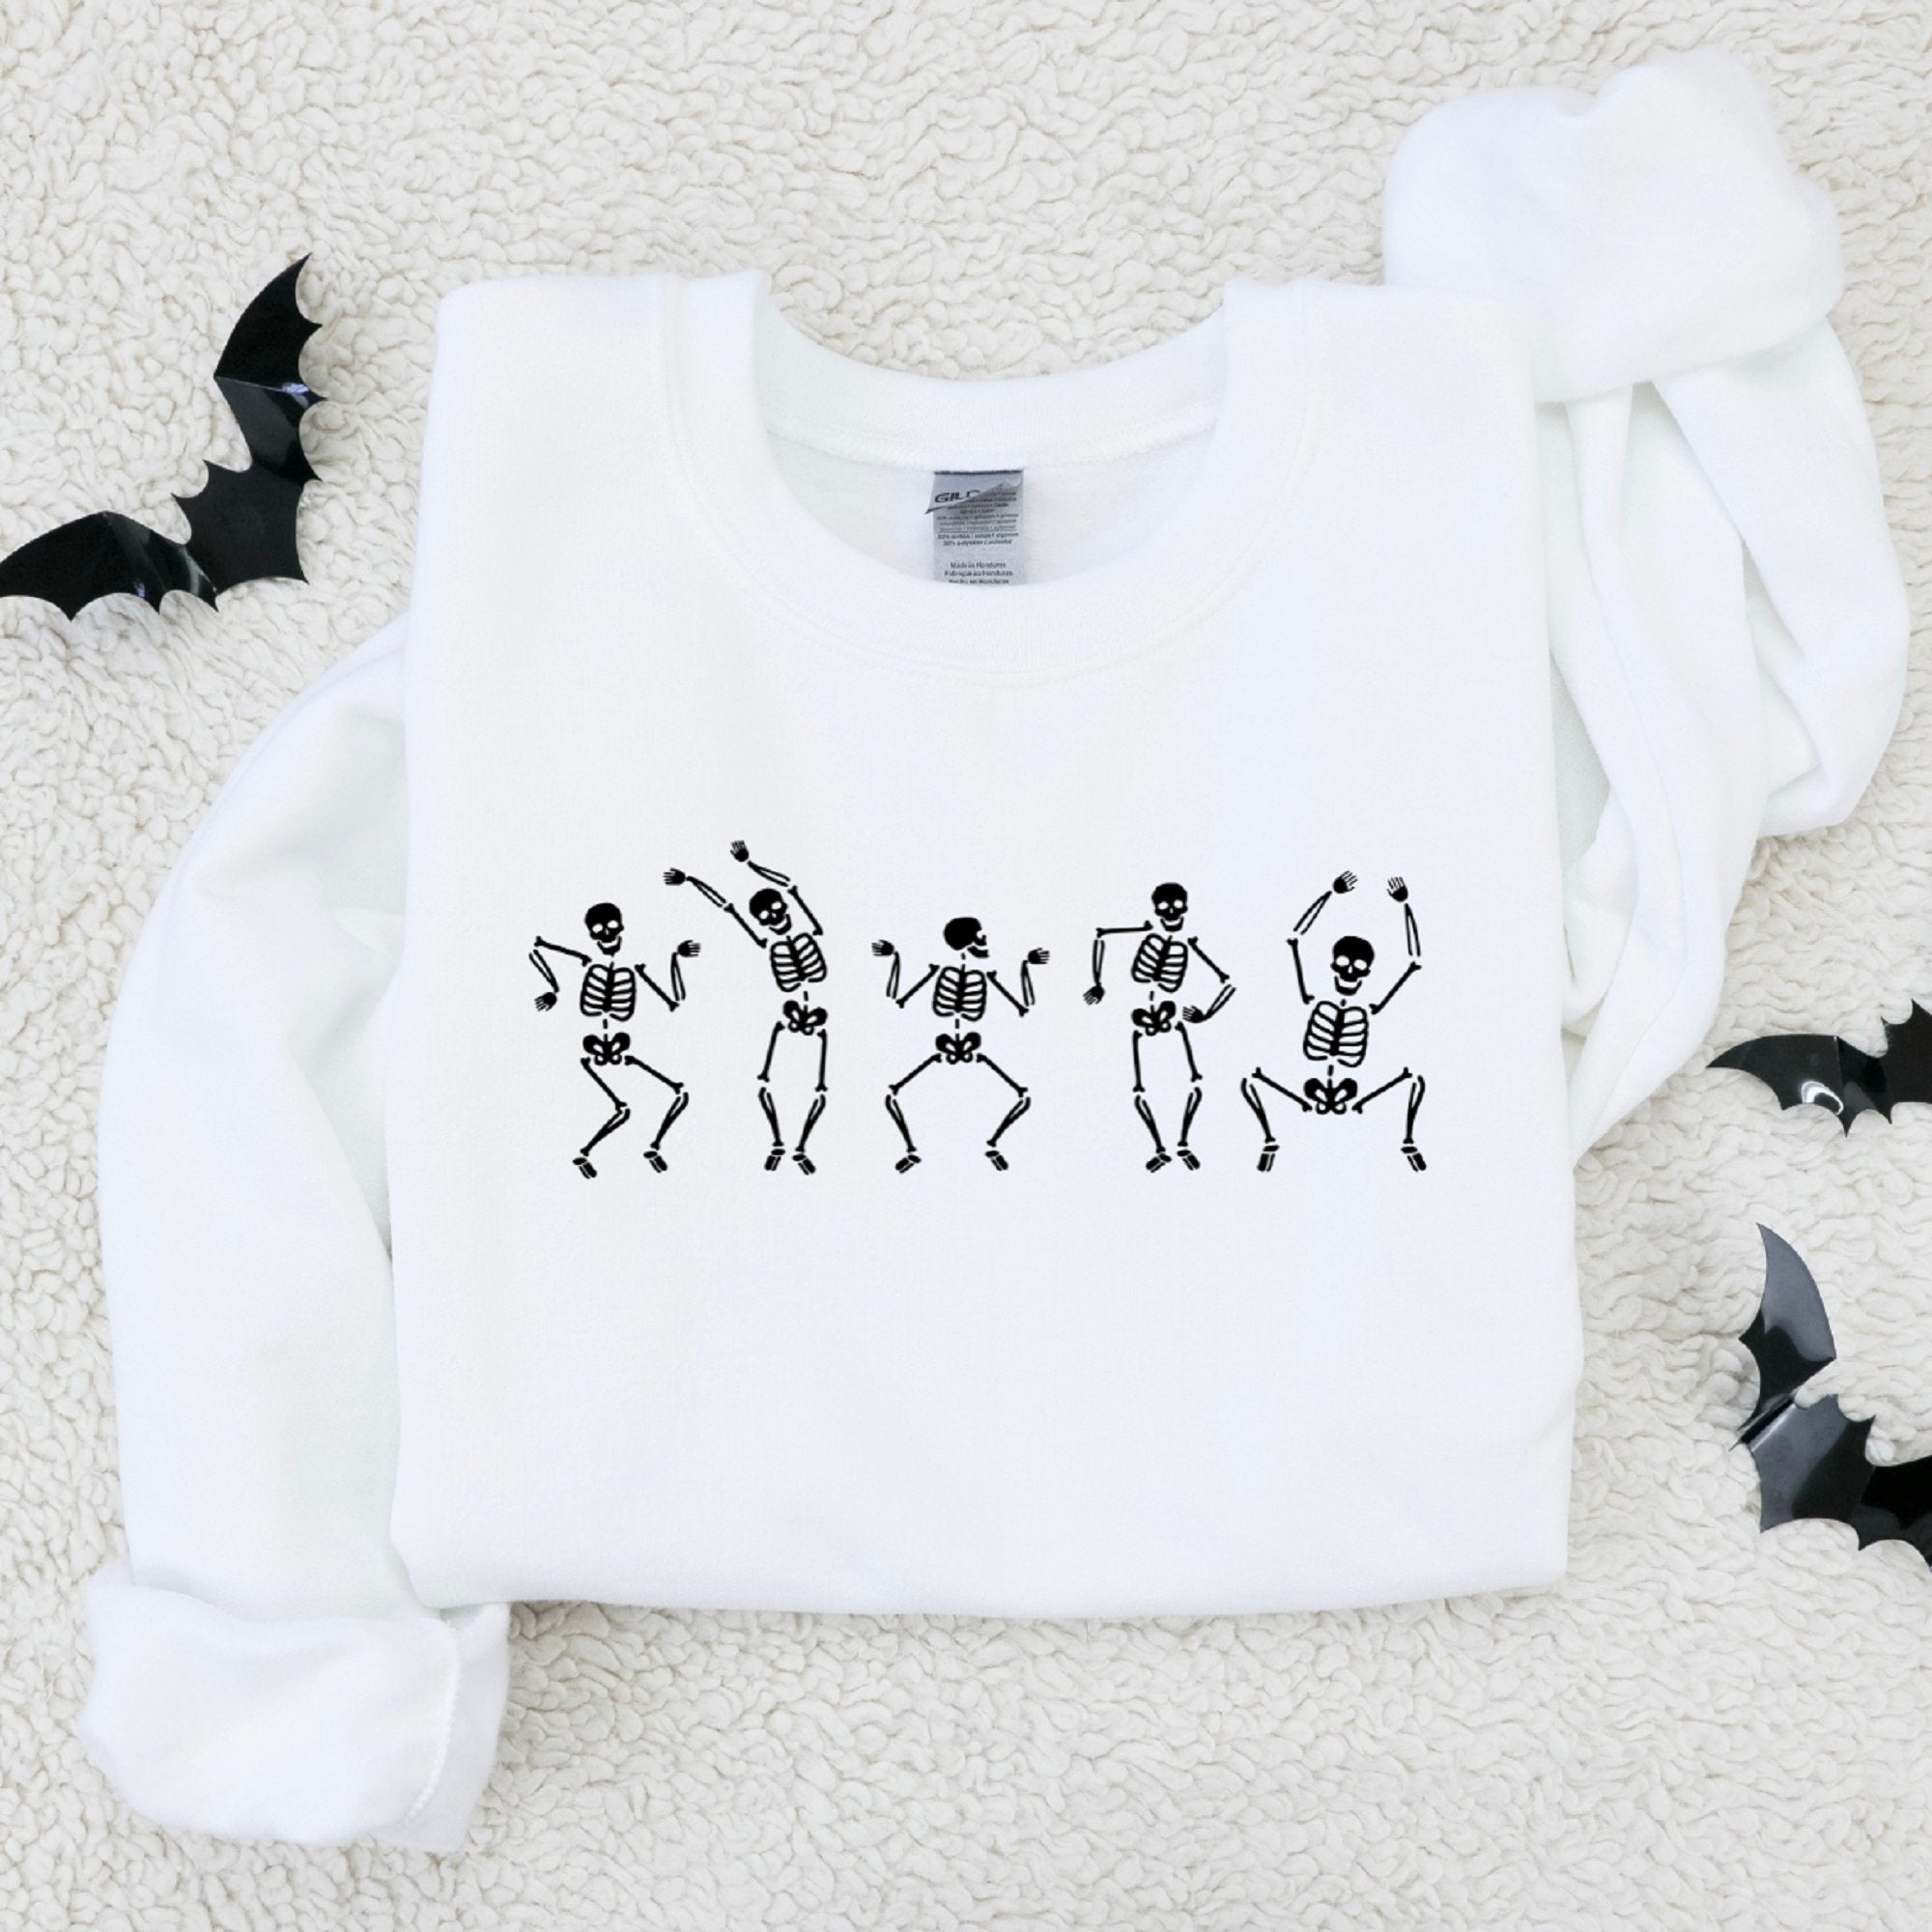 Dancing Skeletons Halloween Sweatshirt - Trendznmore